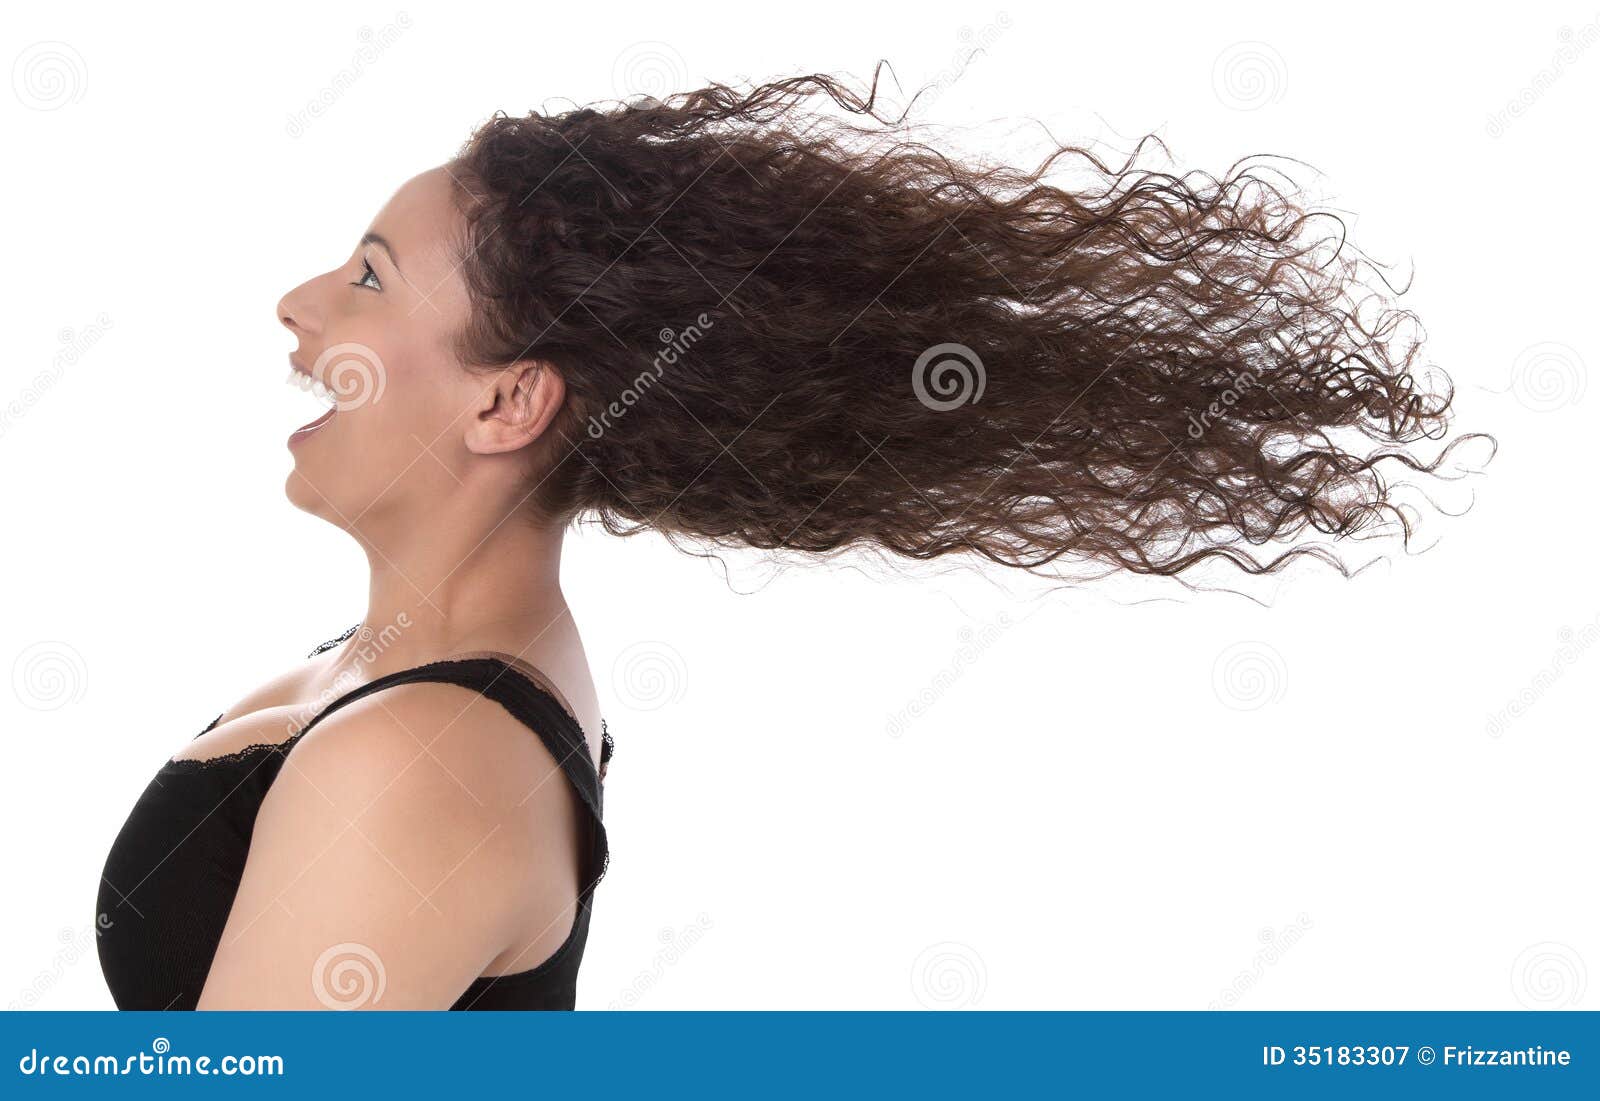 Ветер дует волосах. Волосы развиваются. Сильный ветер волосы. Девушка с развевающимися волосами. Летающие волосы.